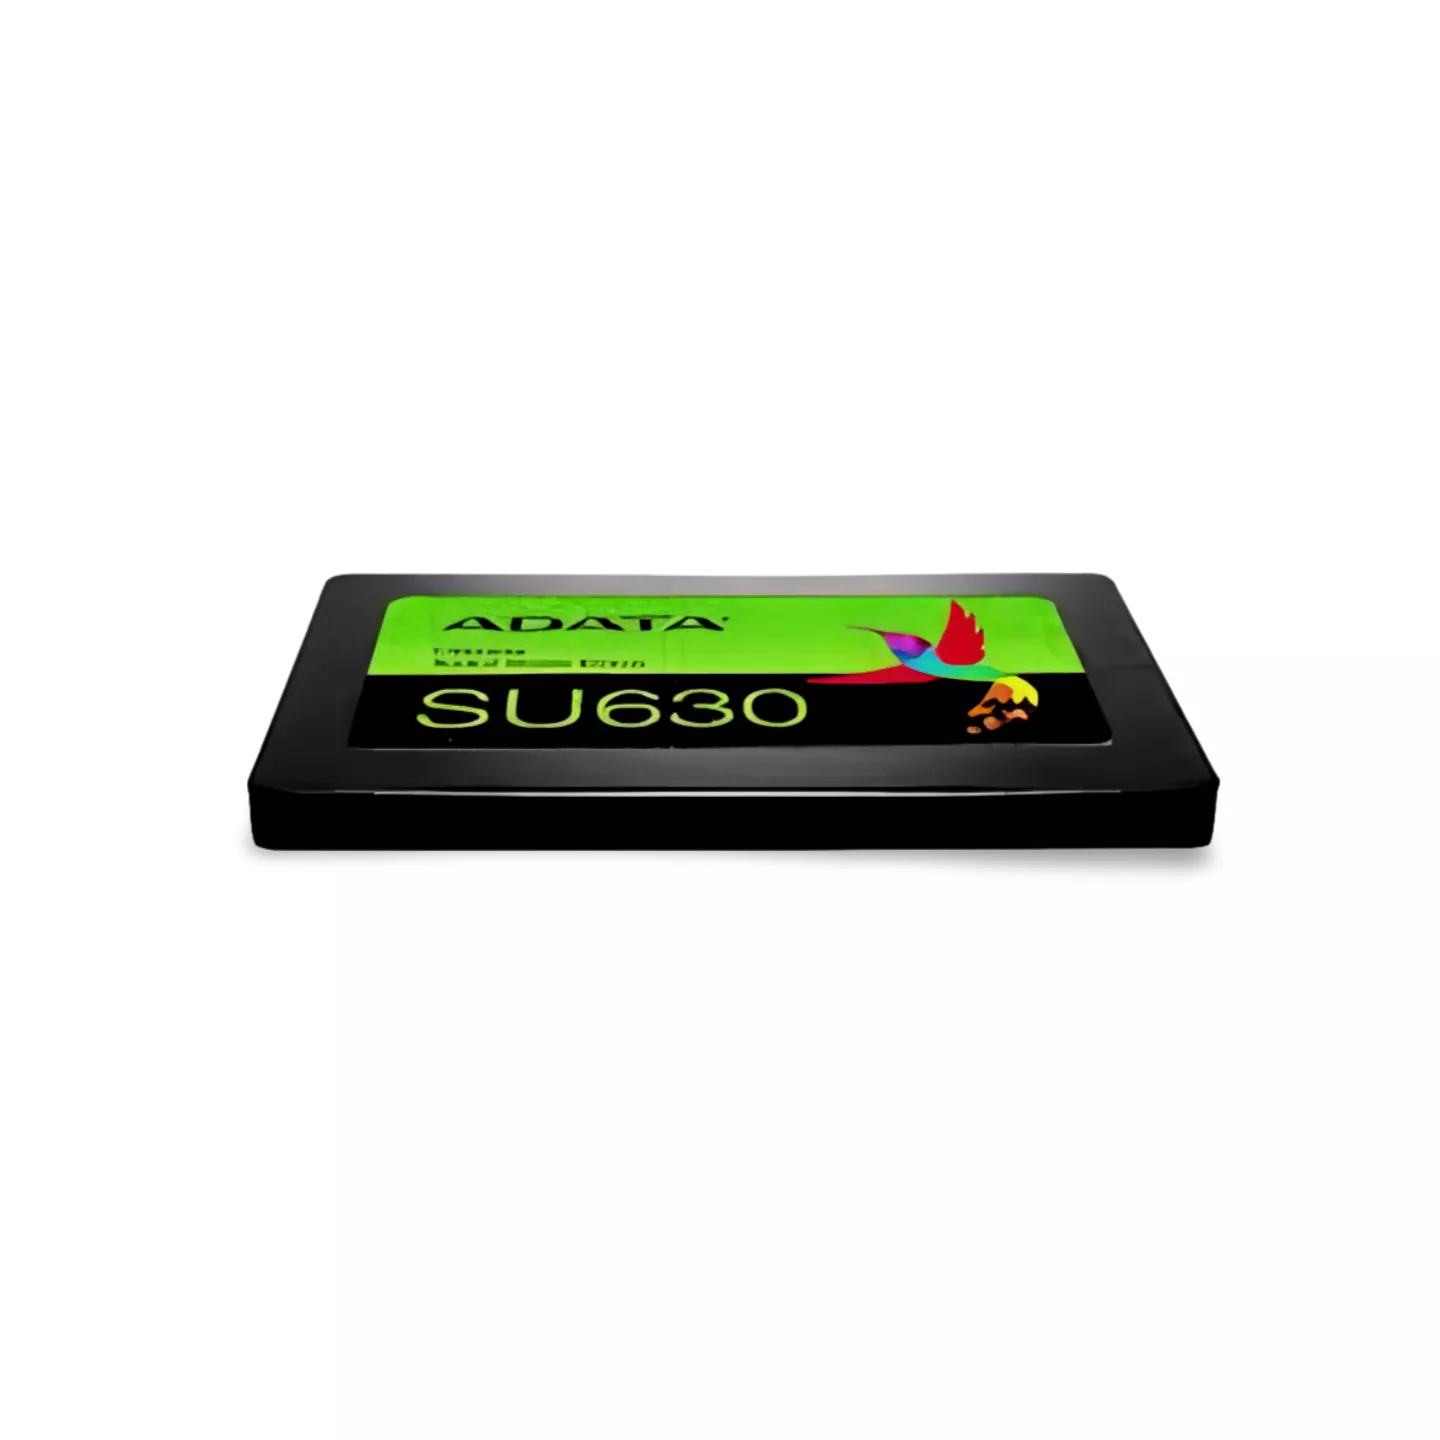 DISCO SSD ADATA 480GB SU630 2 5  SATA 6GB S  3D NAND  2Y  LECTURA 520MB S  ESCRITURA 450MB S